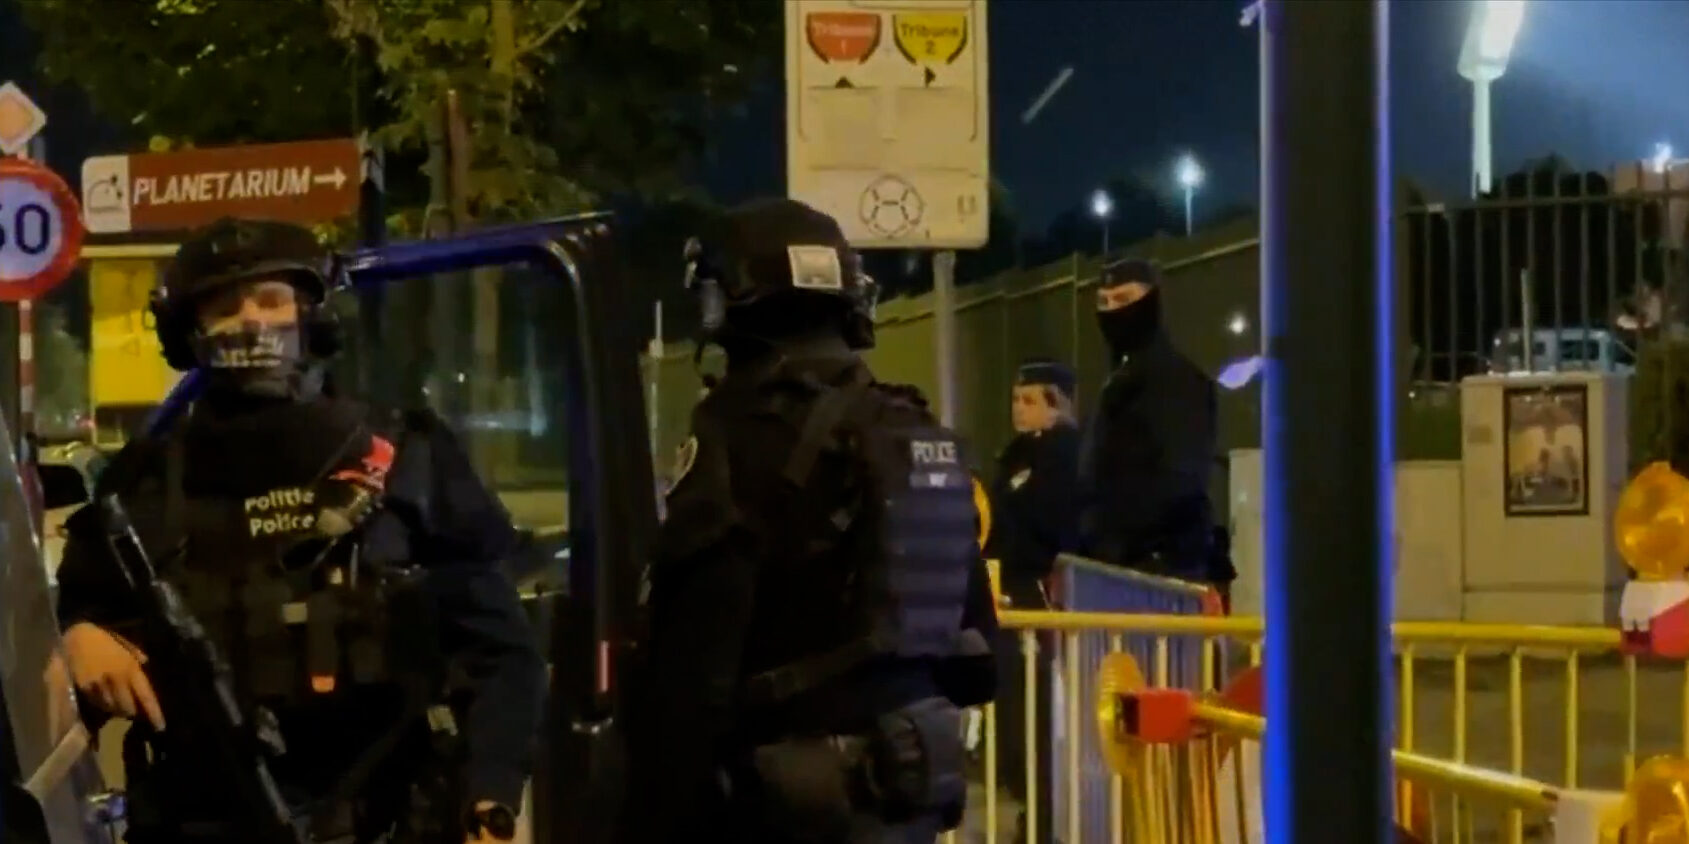 Πυροβολισμοί στο κέντρο των Βρυξελλών – Πληροφορίες για τρεις τραυματίες από ξεκαθάρισμα λογαριασμών